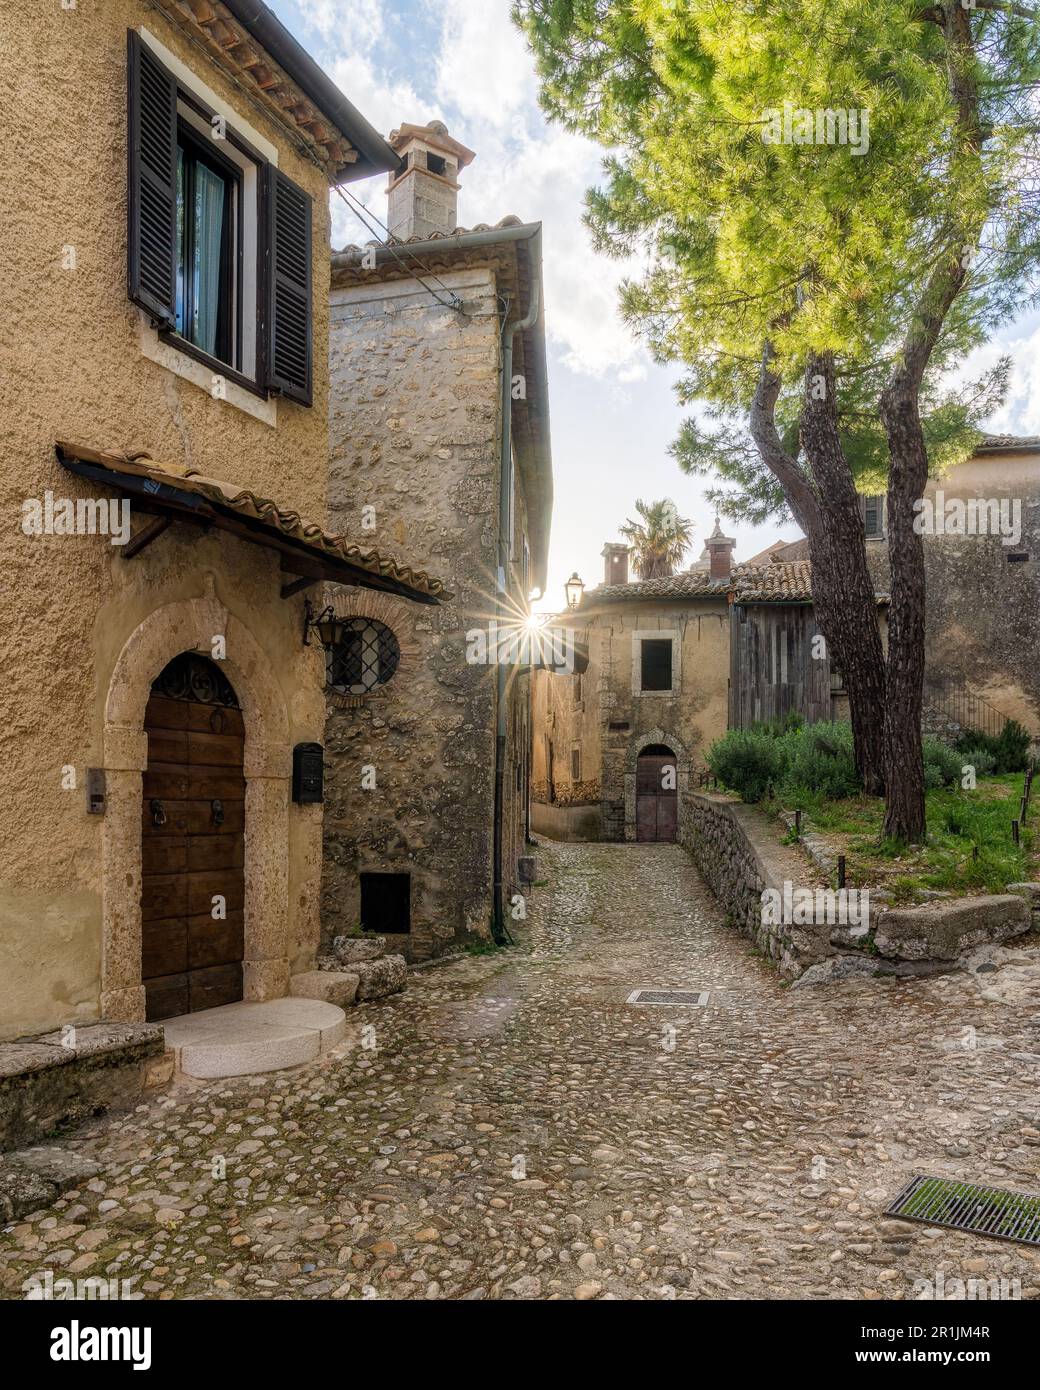 Veduta panoramica ad Arpino, antica cittadina in provincia di Frosinone, Lazio, Italia centrale. Foto Stock